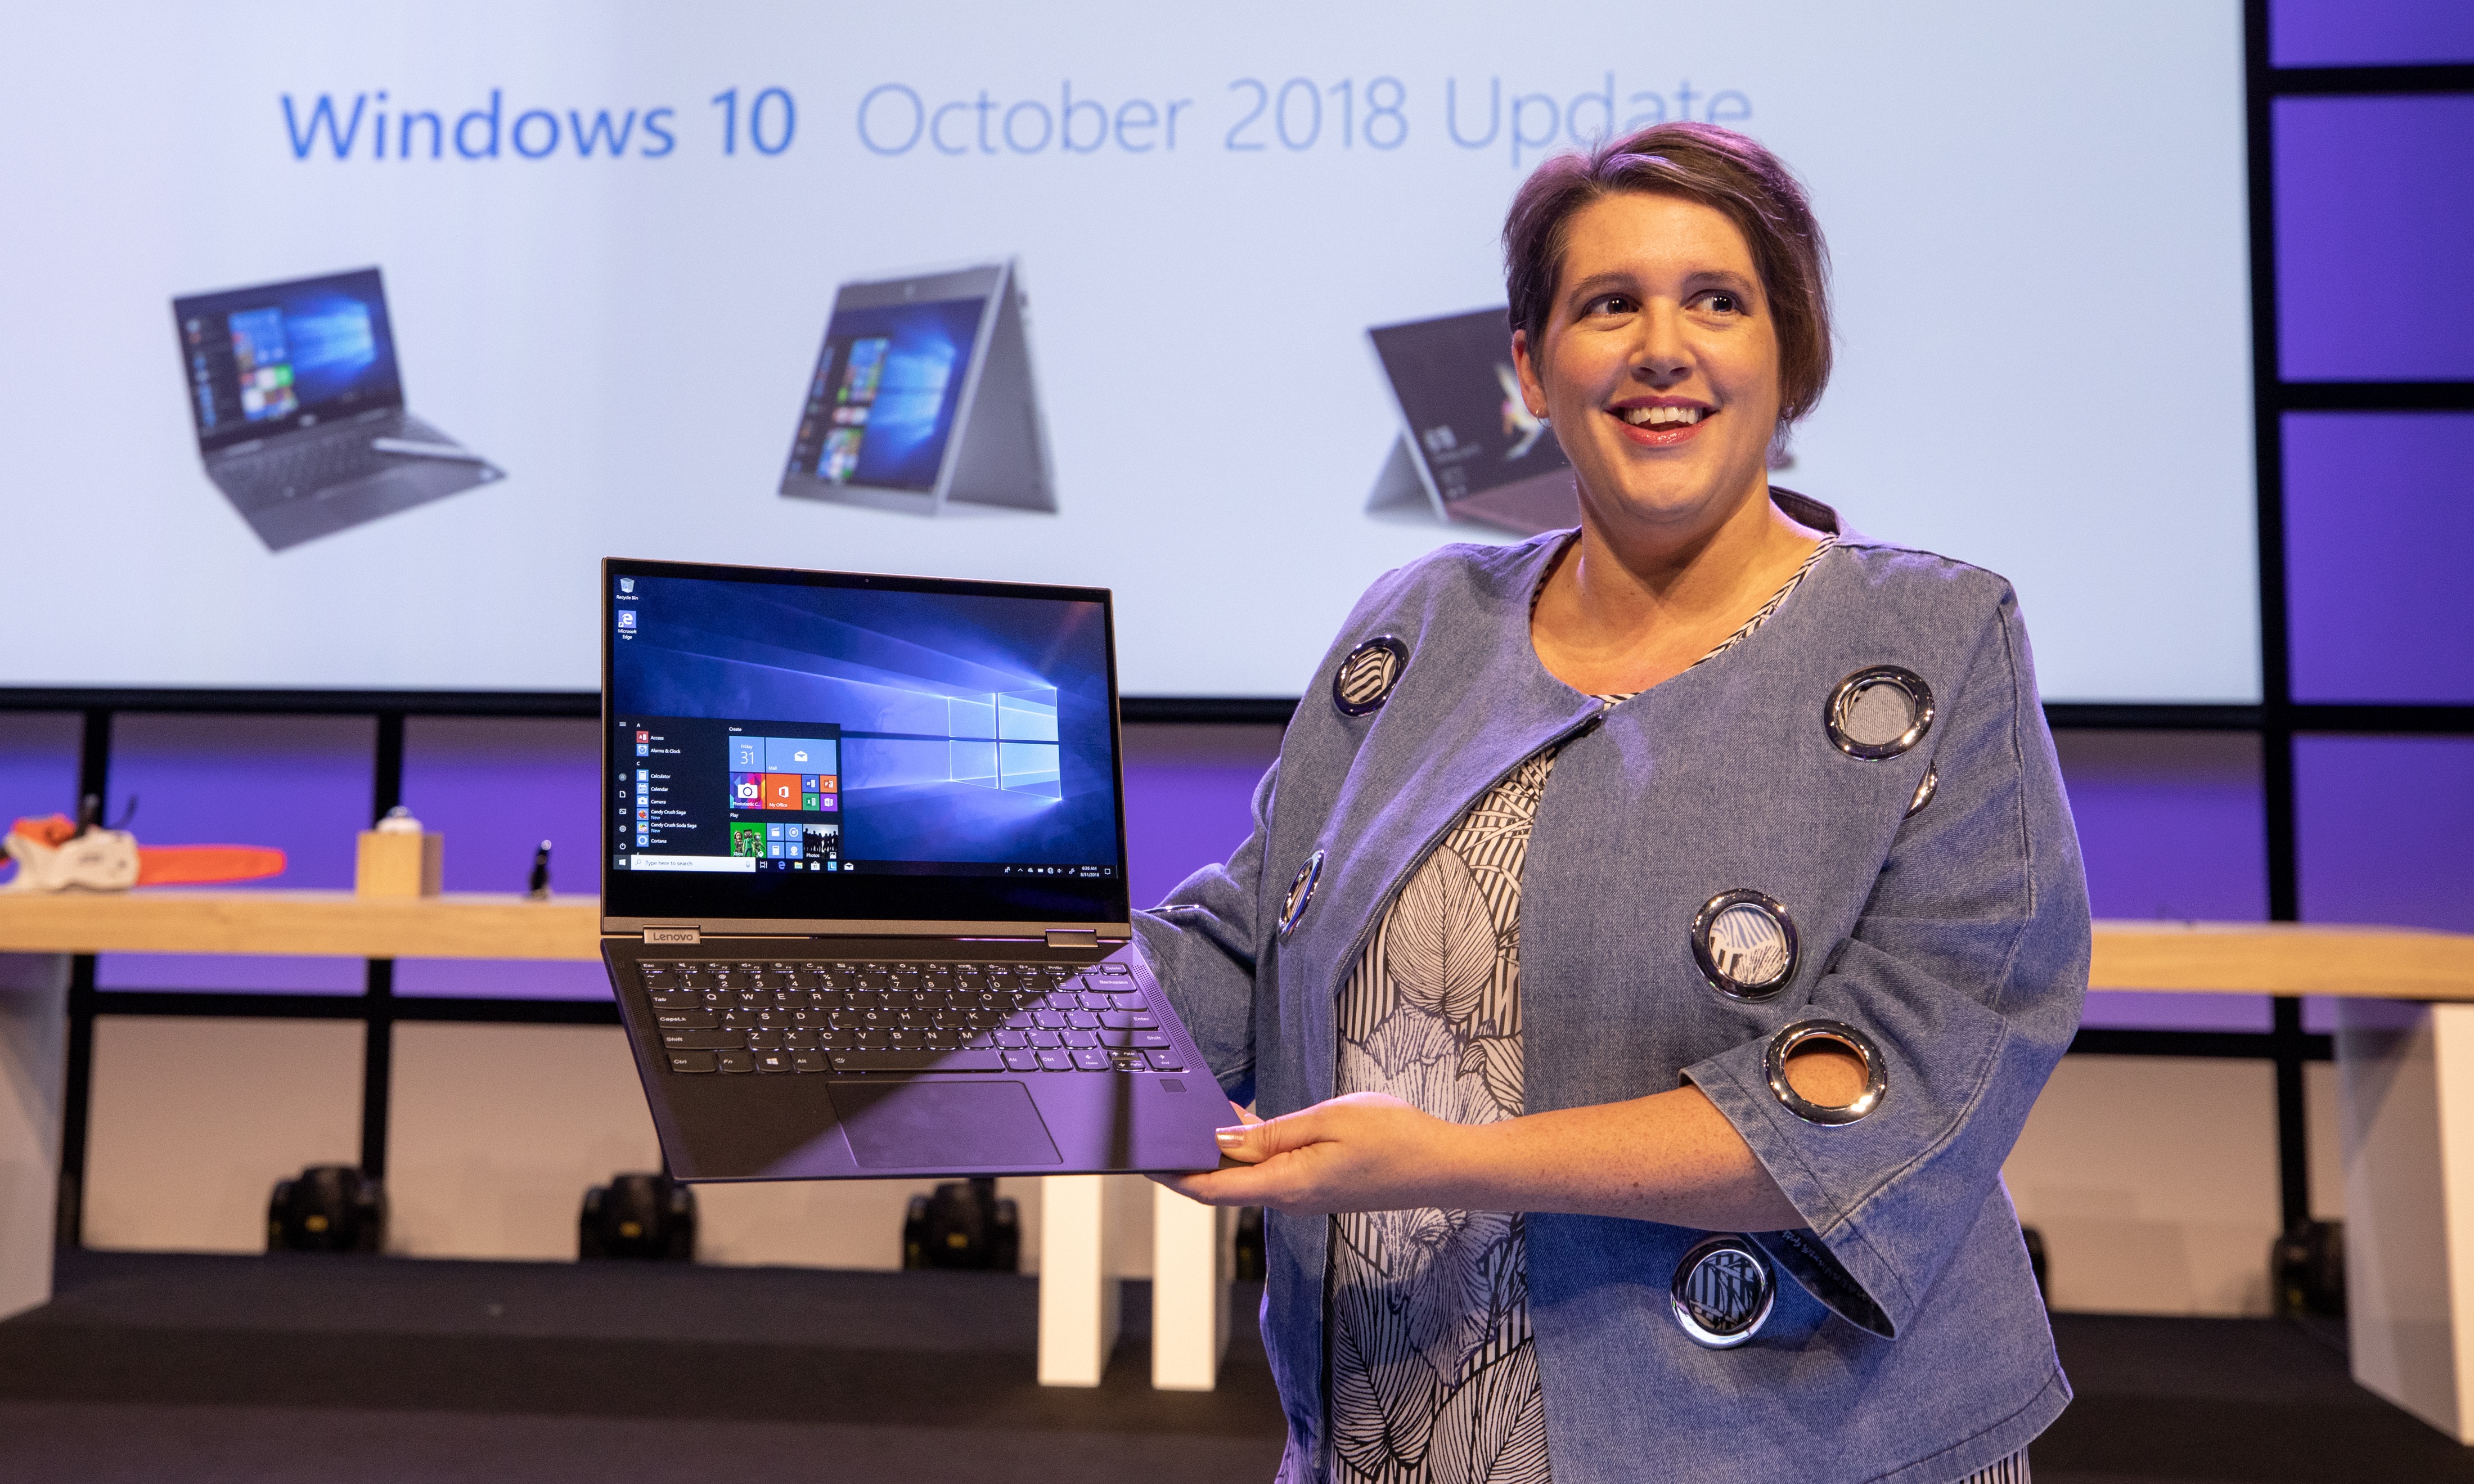 Den neste store Windows 10-oppdateringen kommer i oktober